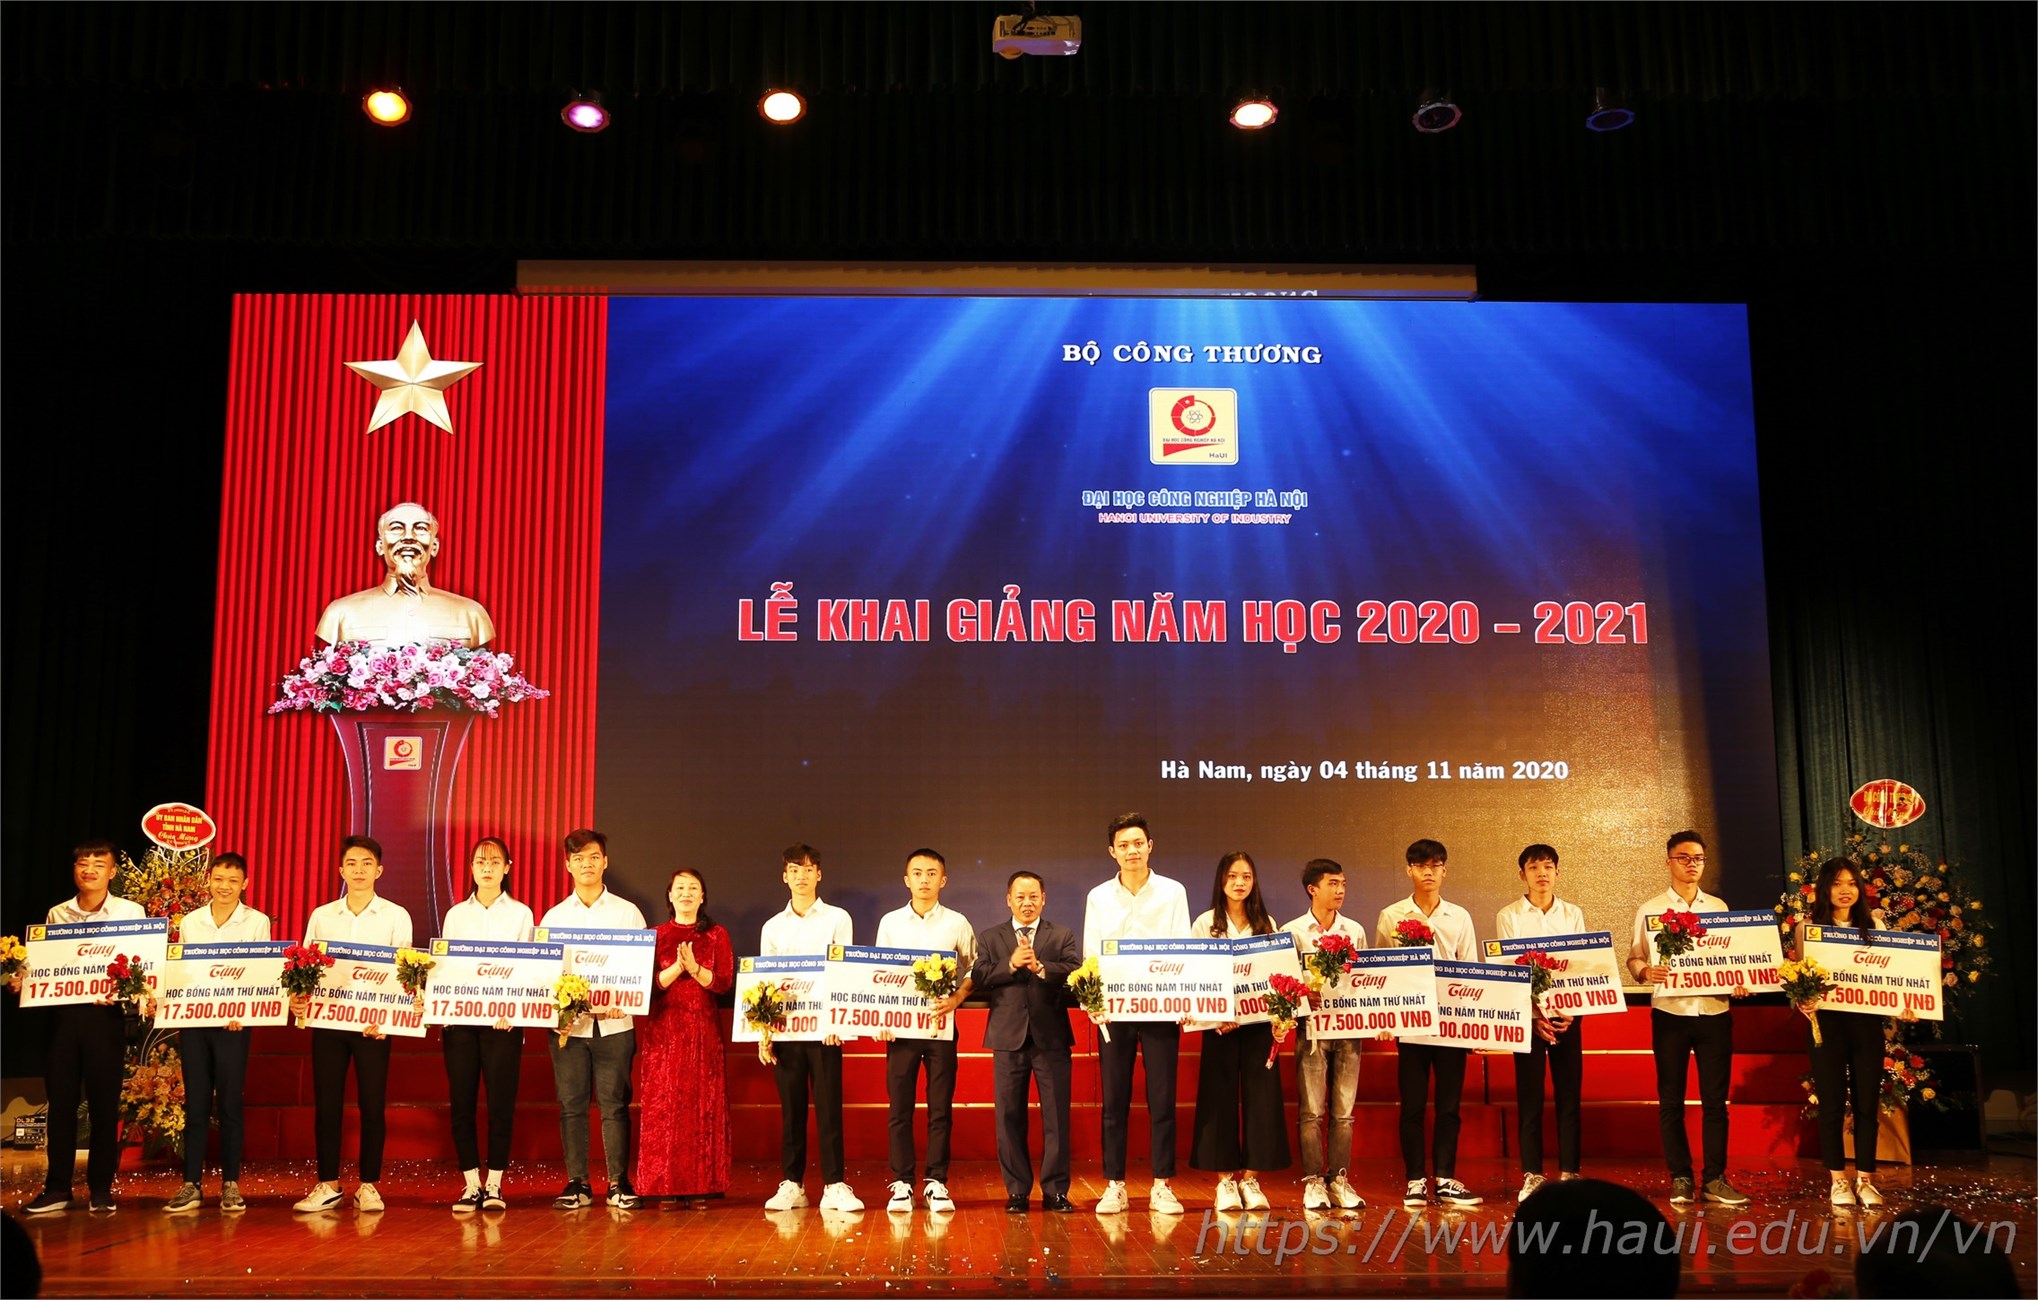 Đại học Công nghiệp Hà Nội khai giảng năm học 2020 - 2021